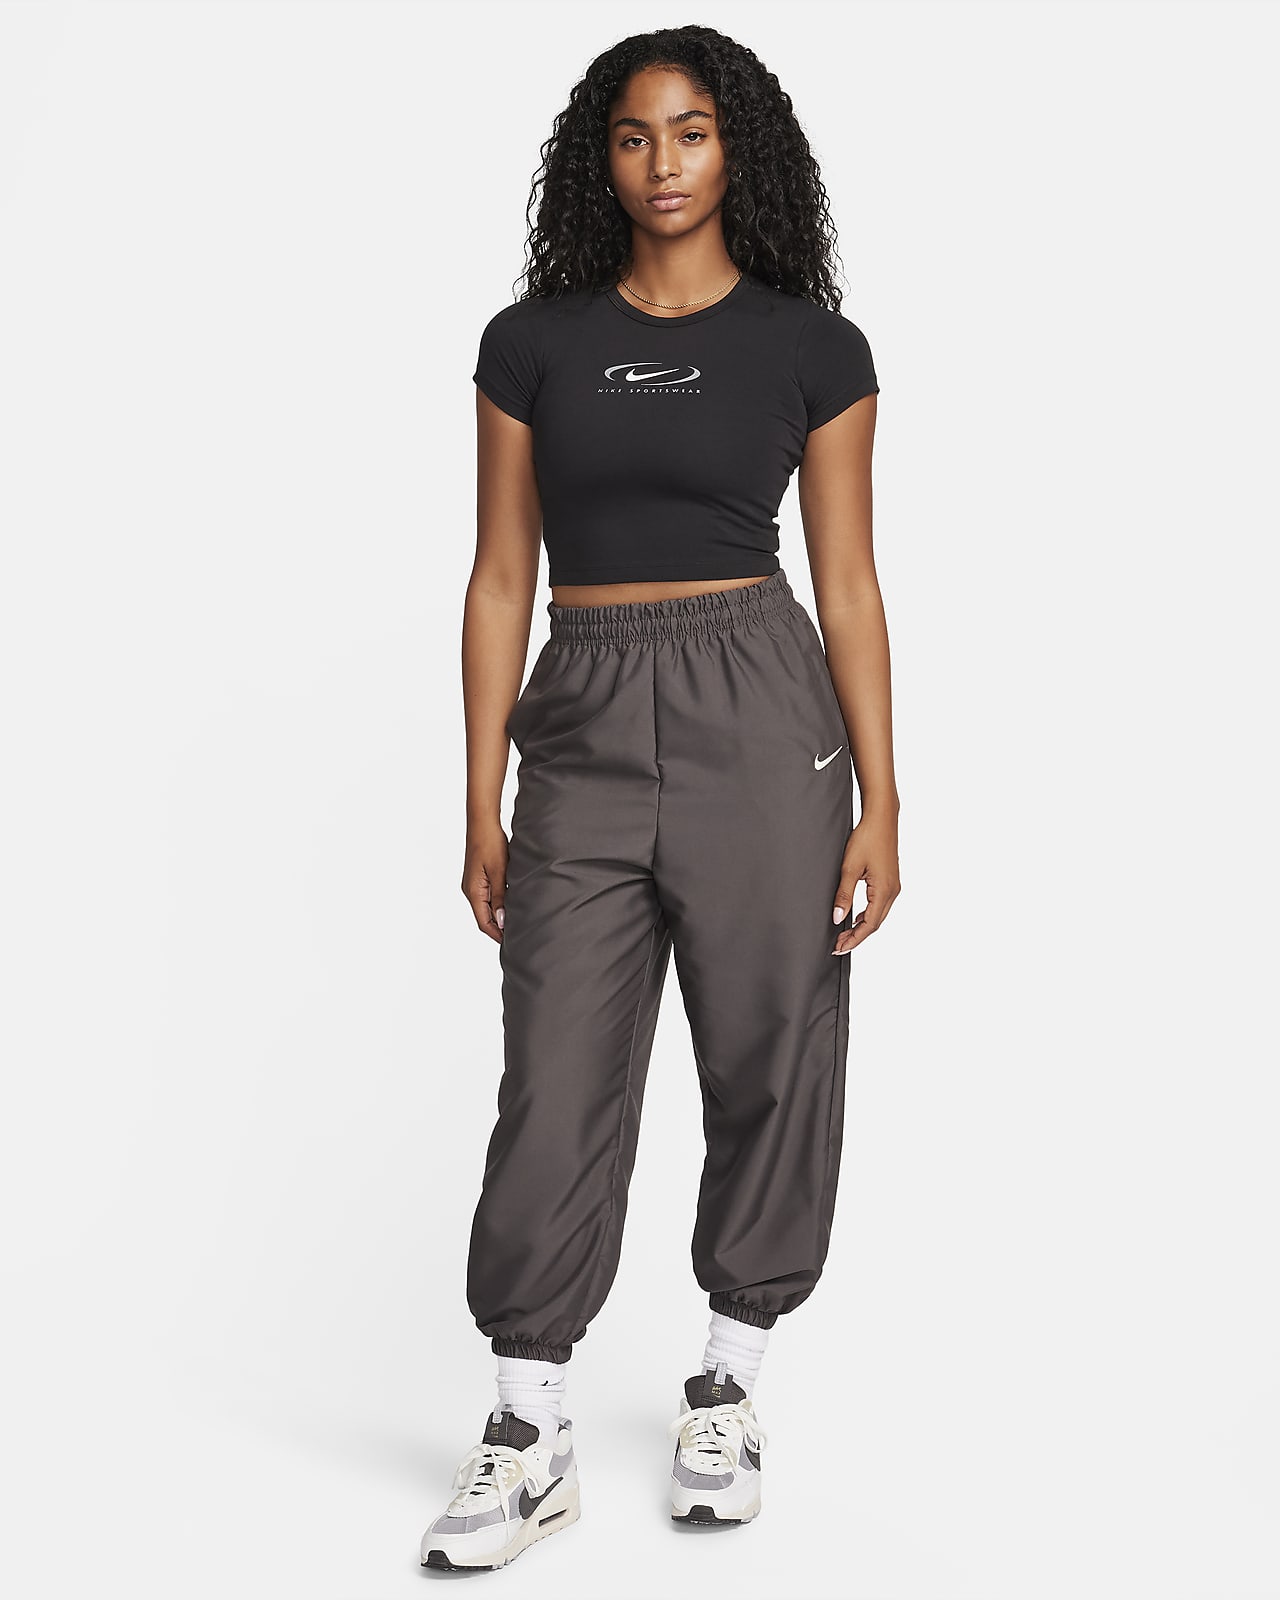 Nike Sportswear Women's Woven Joggers. Nike AT